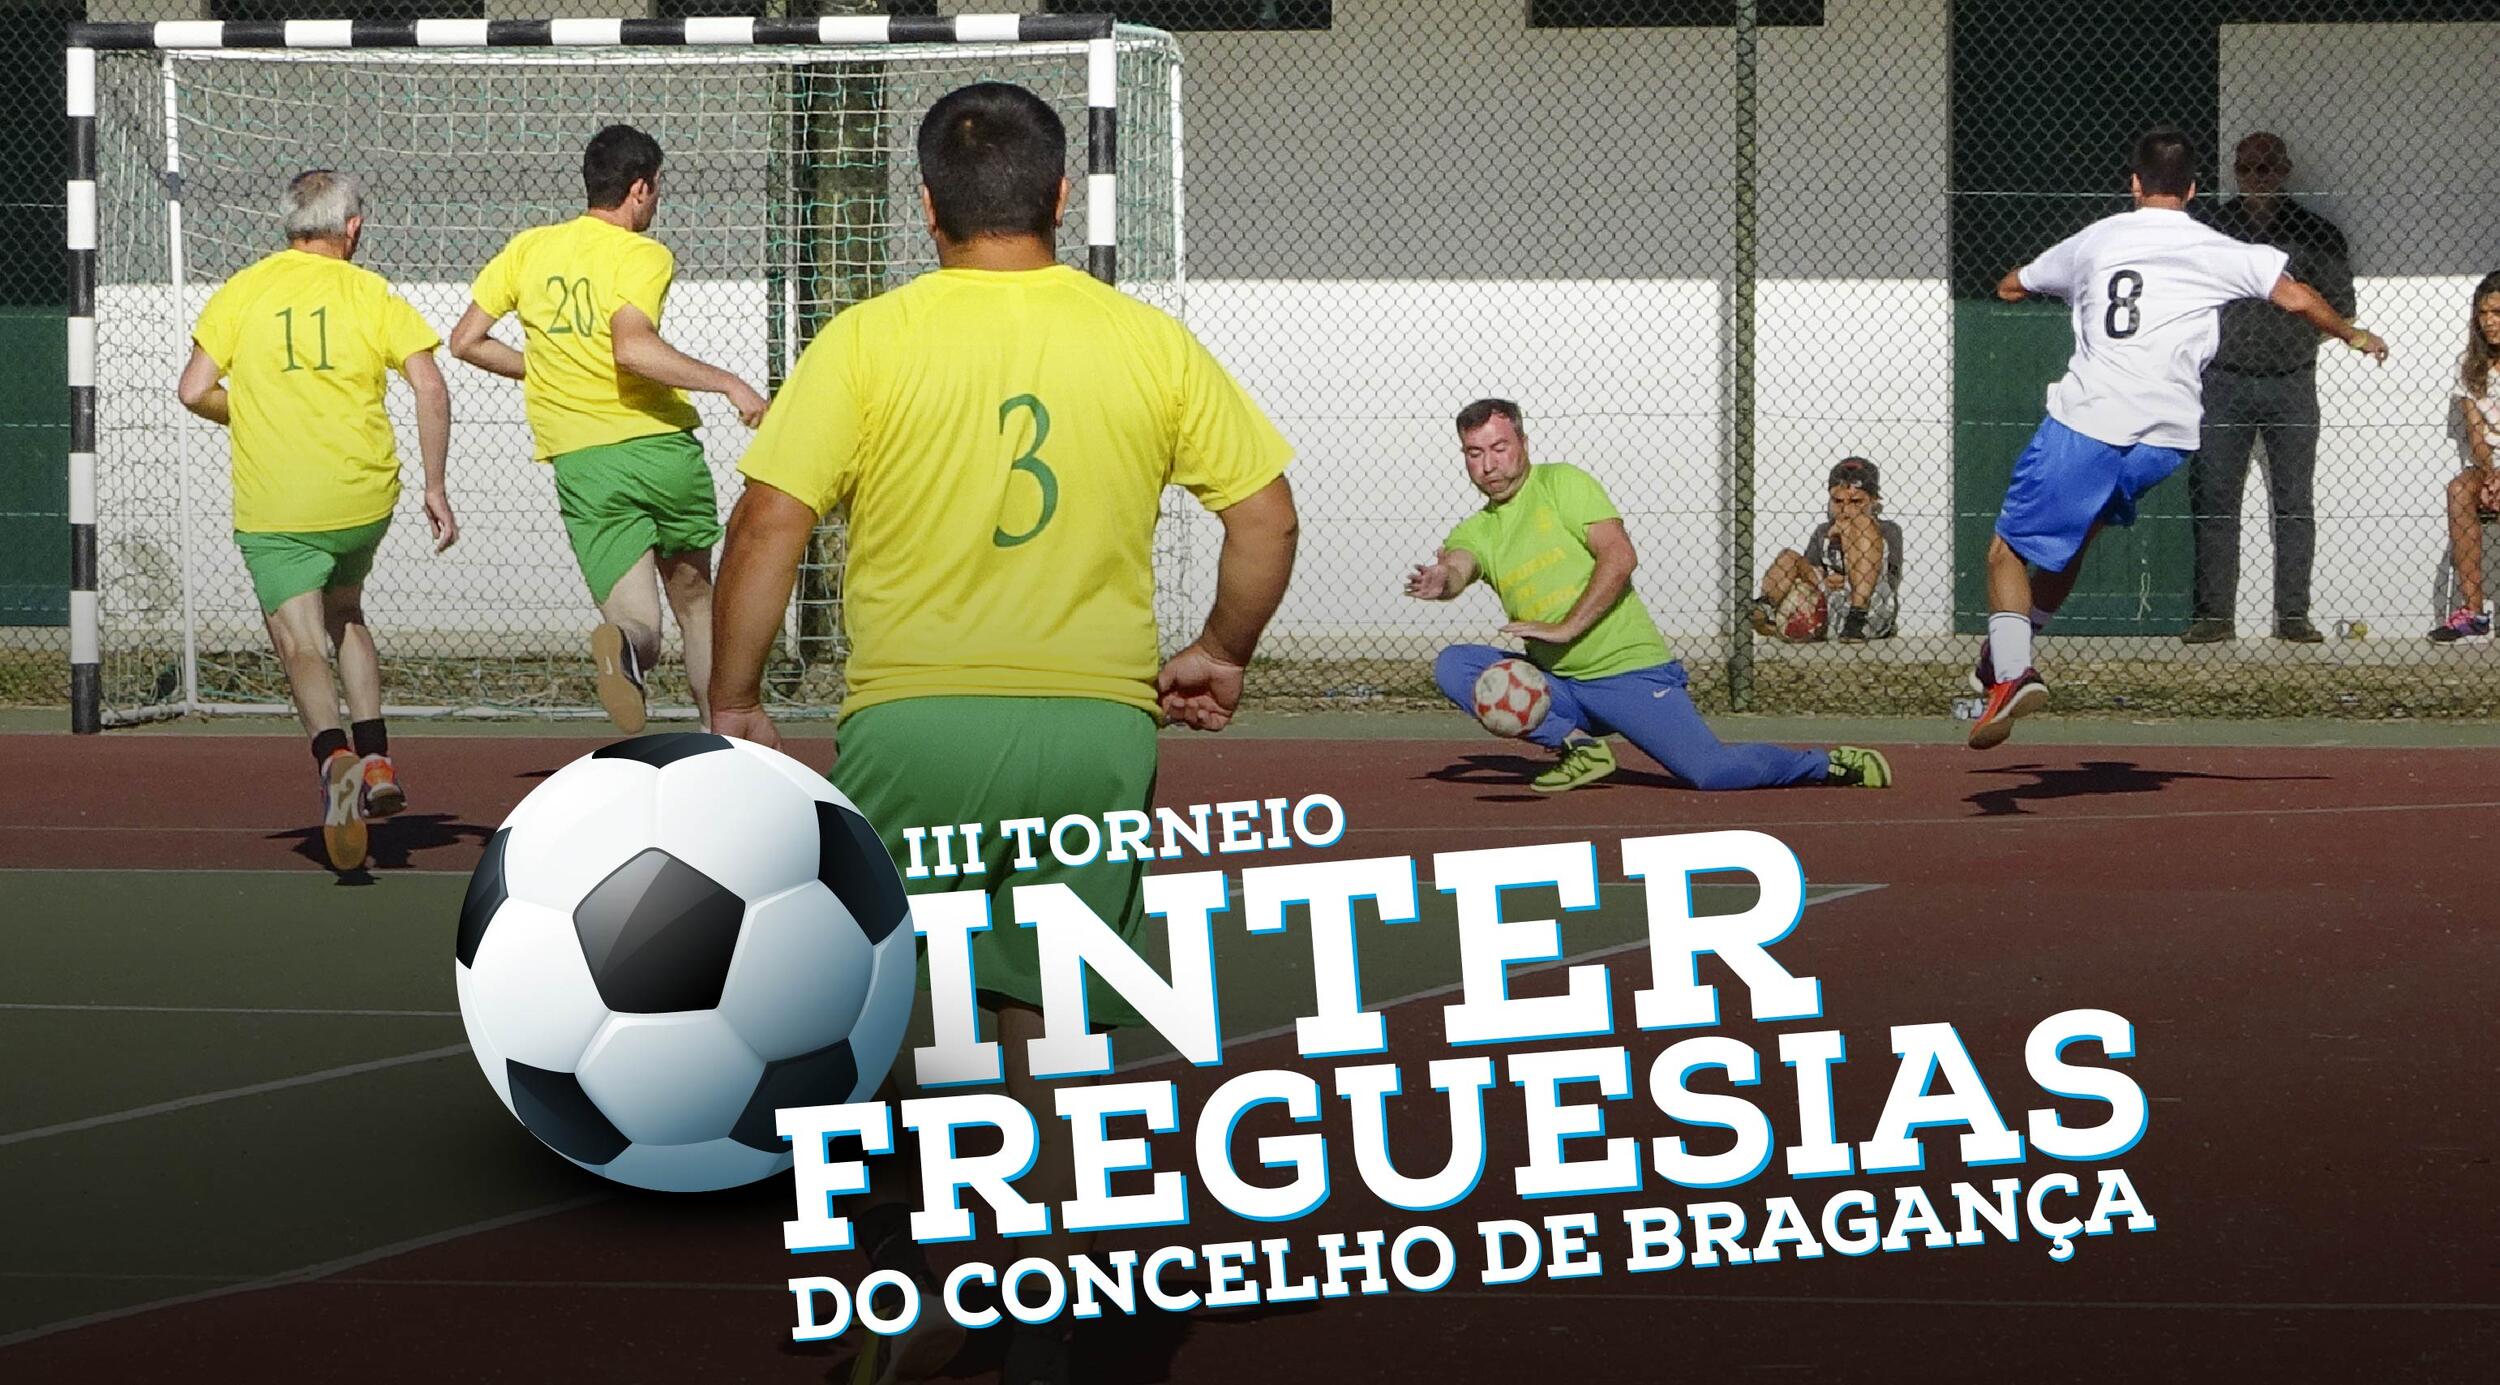 III Torneio Interfreguesias do Concelho de Bragança